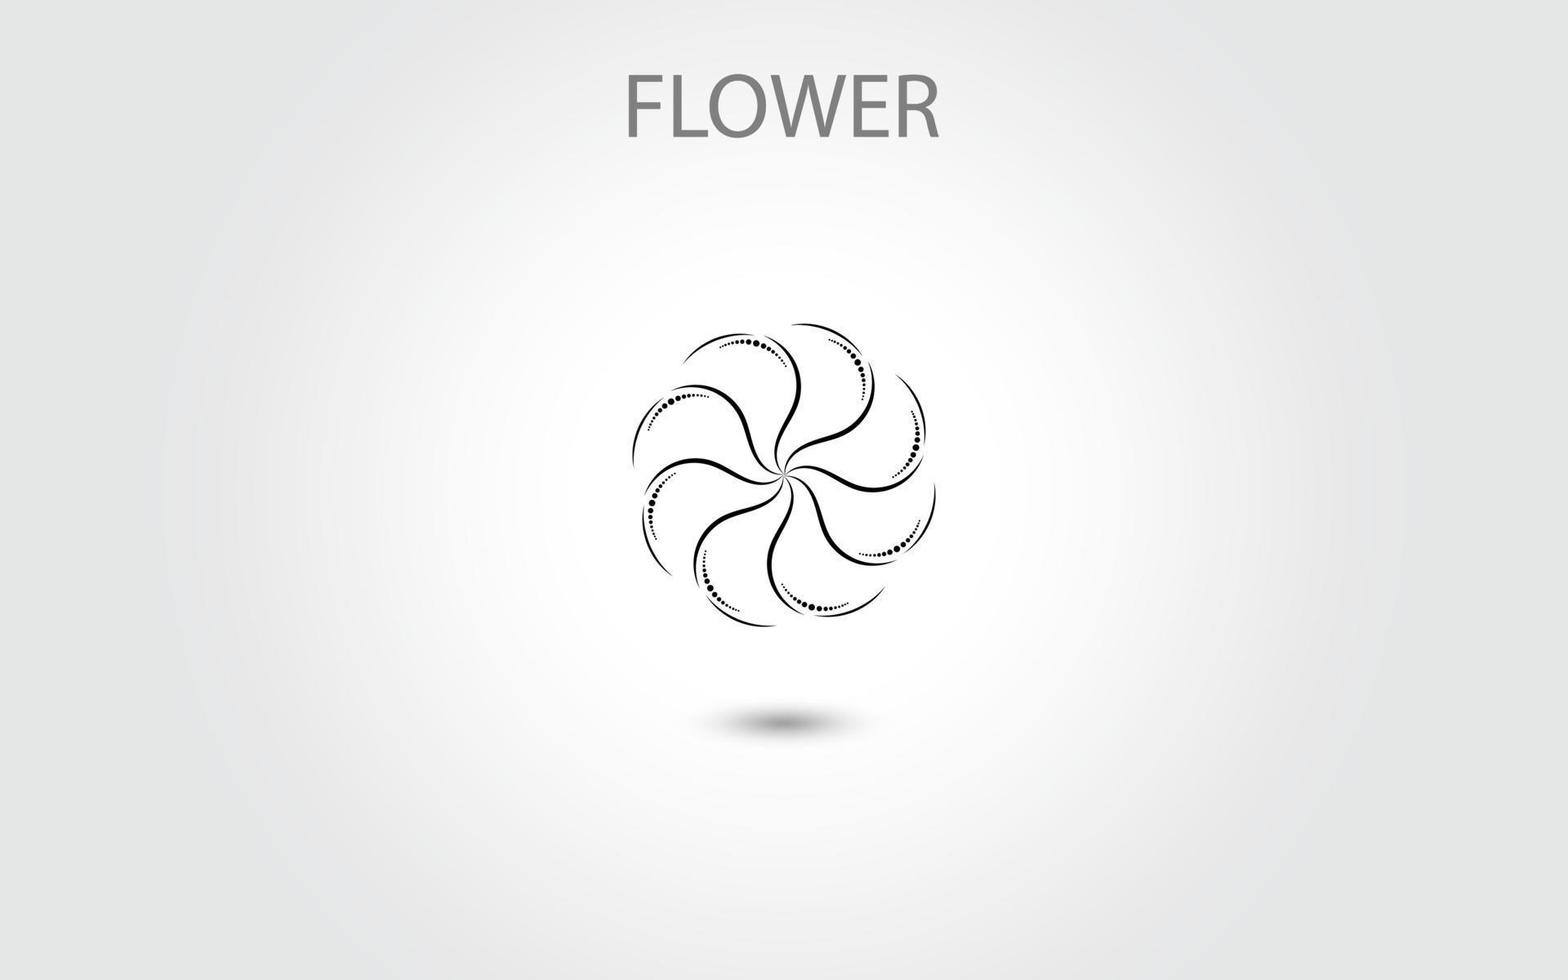 Blumenikonenvektor lokalisiert auf weißem Hintergrund, handgezeichnete Blumenikonenillustration, Blumenlogoschablone, Symbol natürliche Ikone vektor